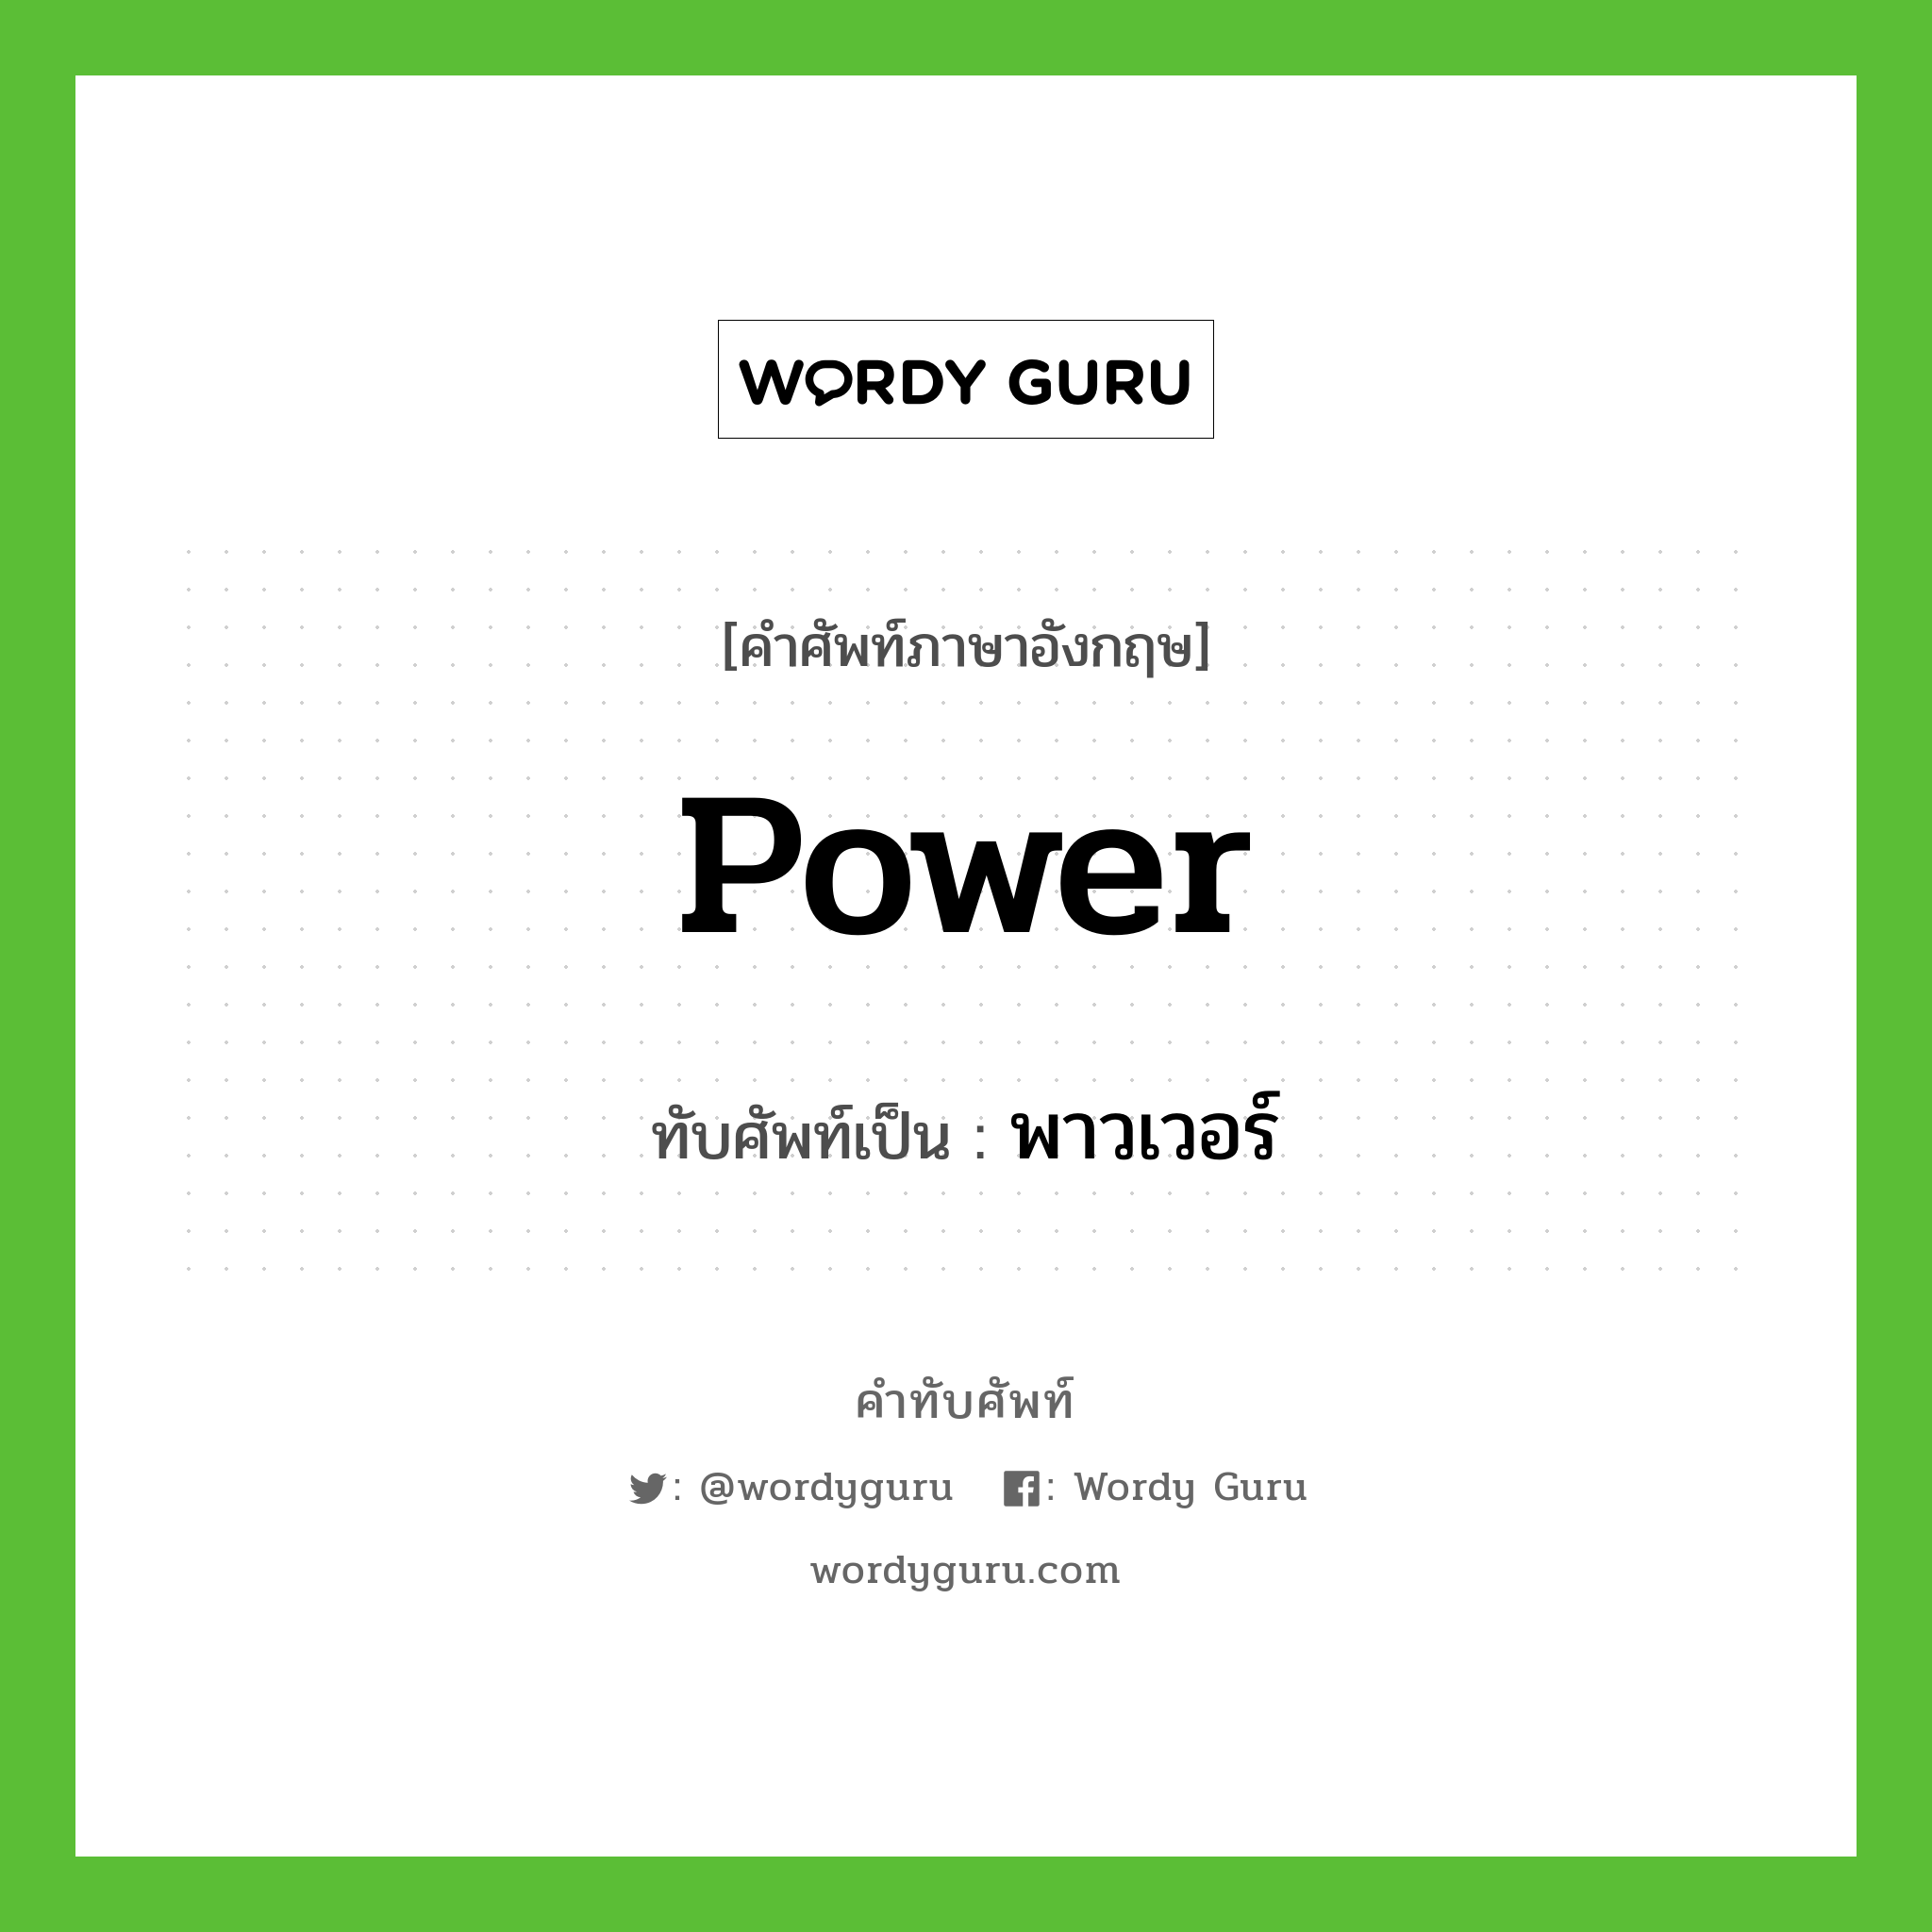 power เขียนเป็นคำไทยว่าอะไร?, คำศัพท์ภาษาอังกฤษ power ทับศัพท์เป็น พาวเวอร์